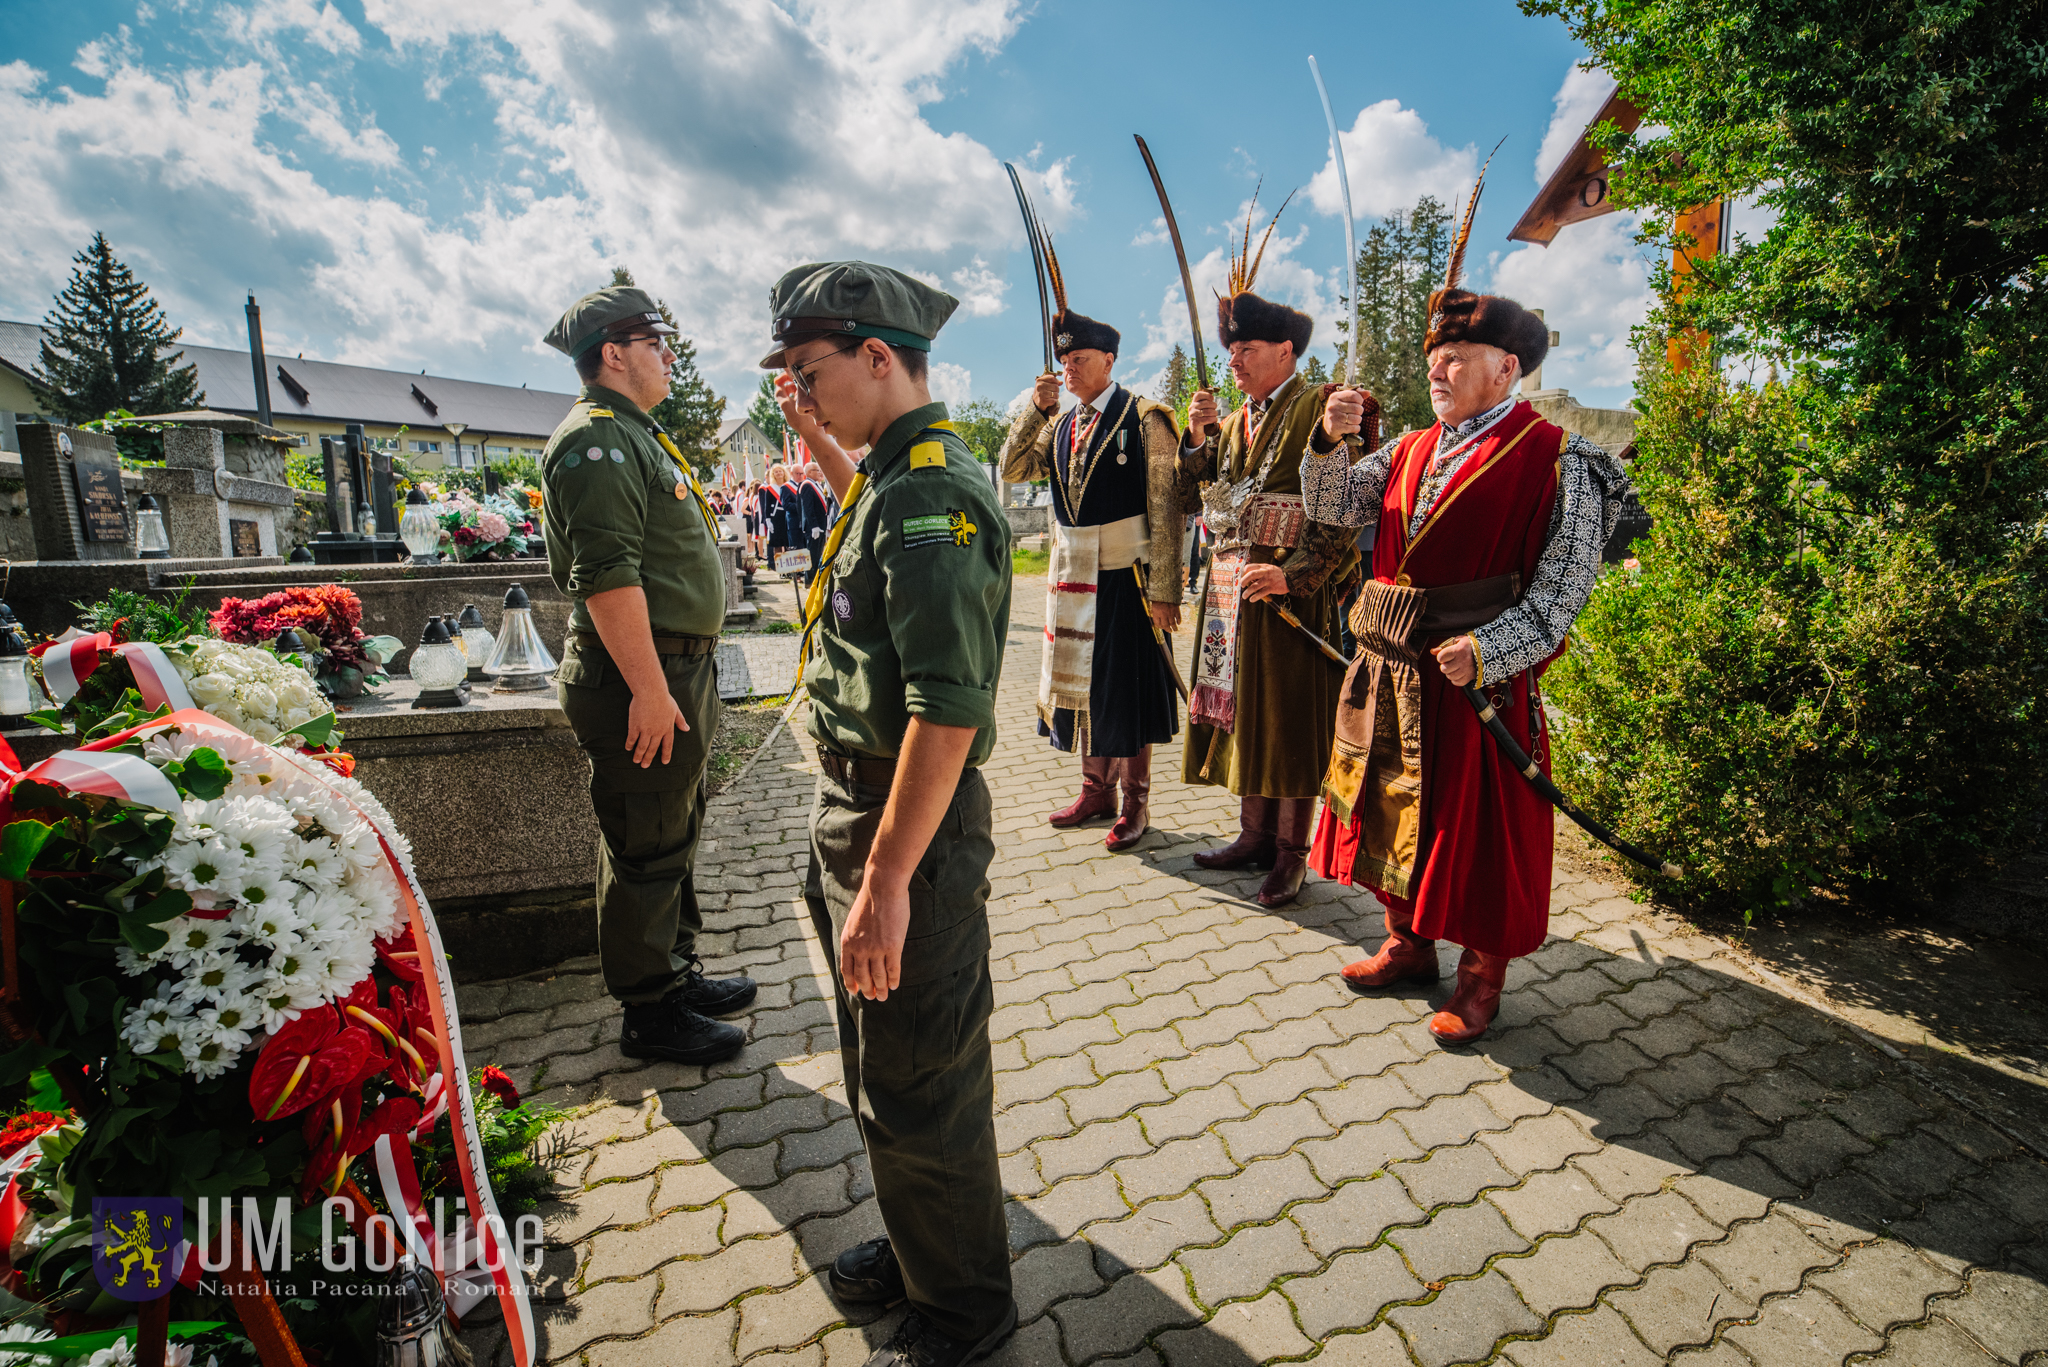 Kombatanci składają wiązankę pod Krzyżem Katyńskim.